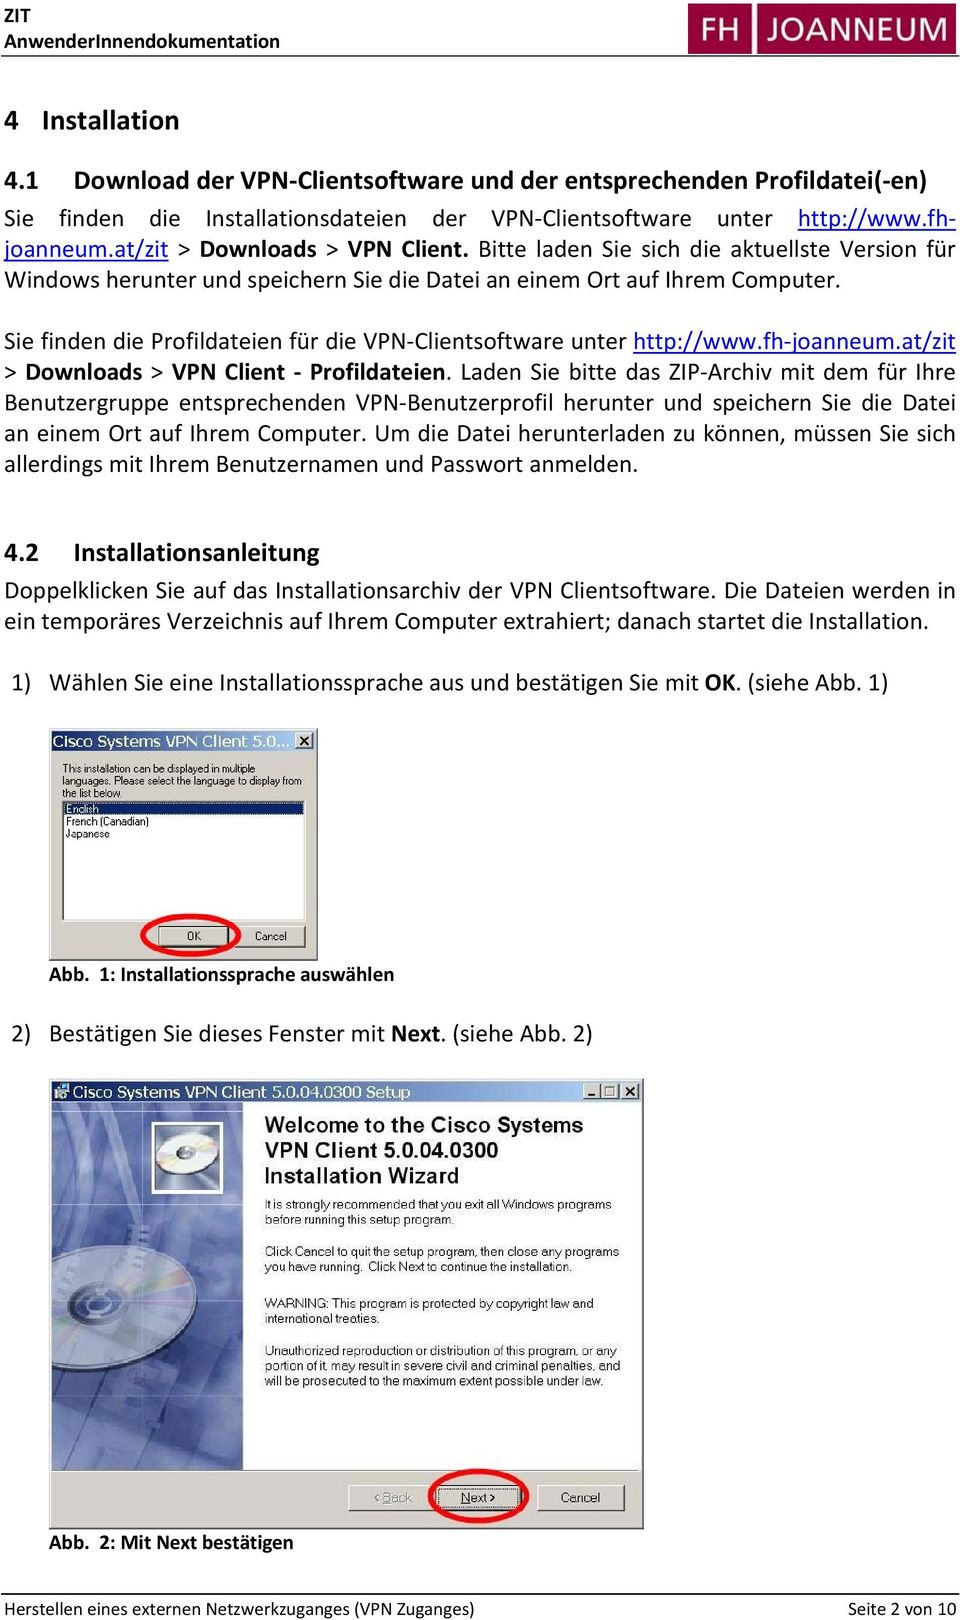 Sie finden die Profildateien für die VPN Clientsoftware unter http://www.fh joanneum.at/zit > Downloads > VPN Client Profildateien.